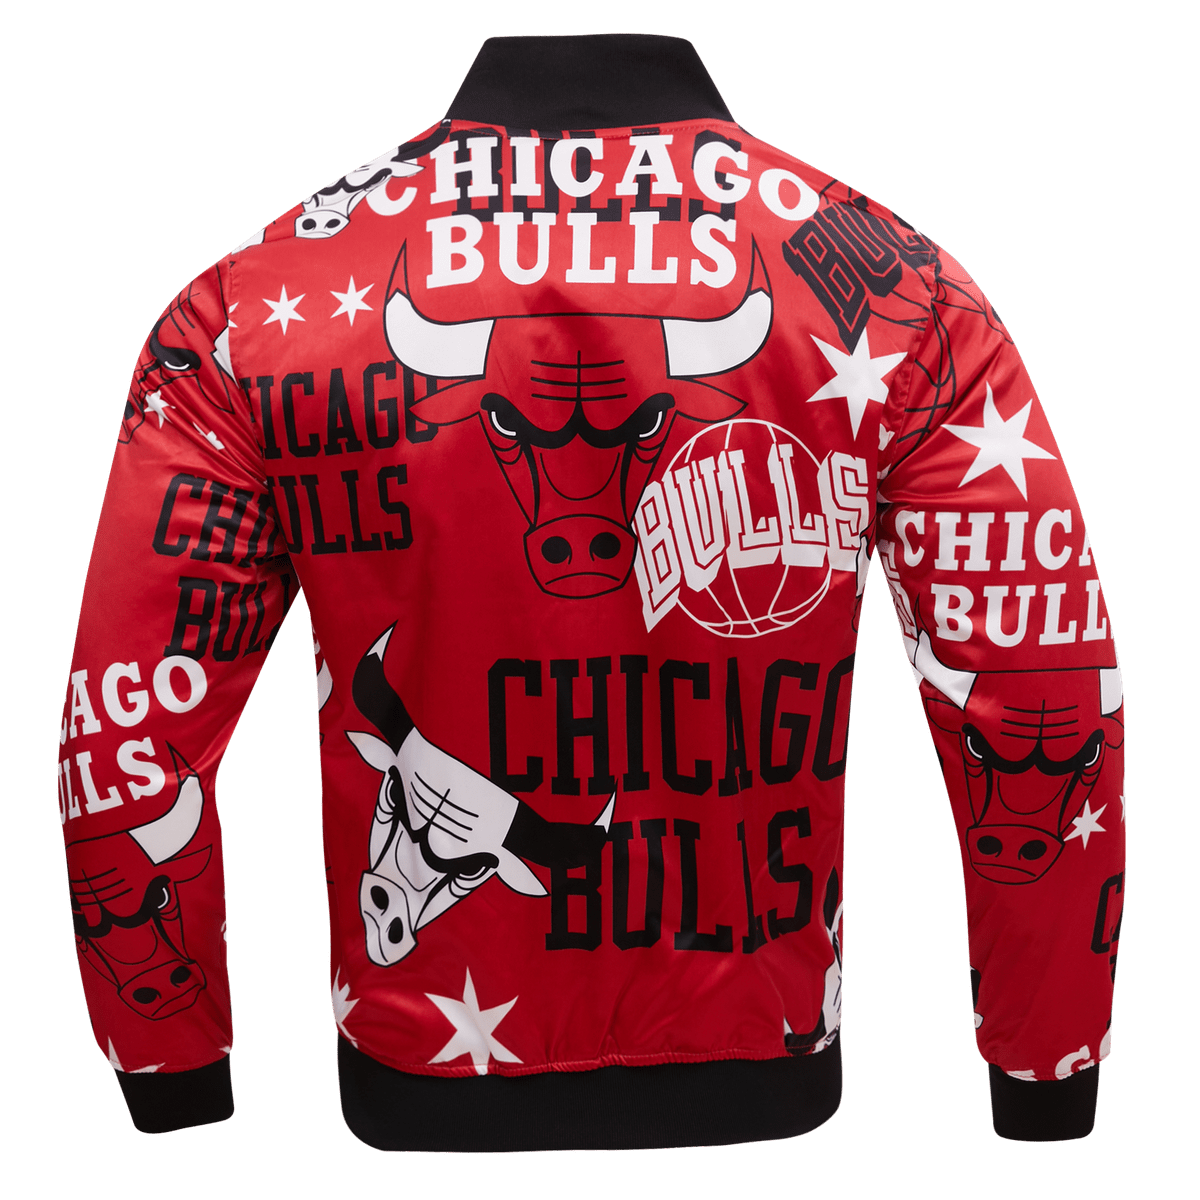 Men's Chicago Bulls Pro Standard White Capsule Baseball Button-Up